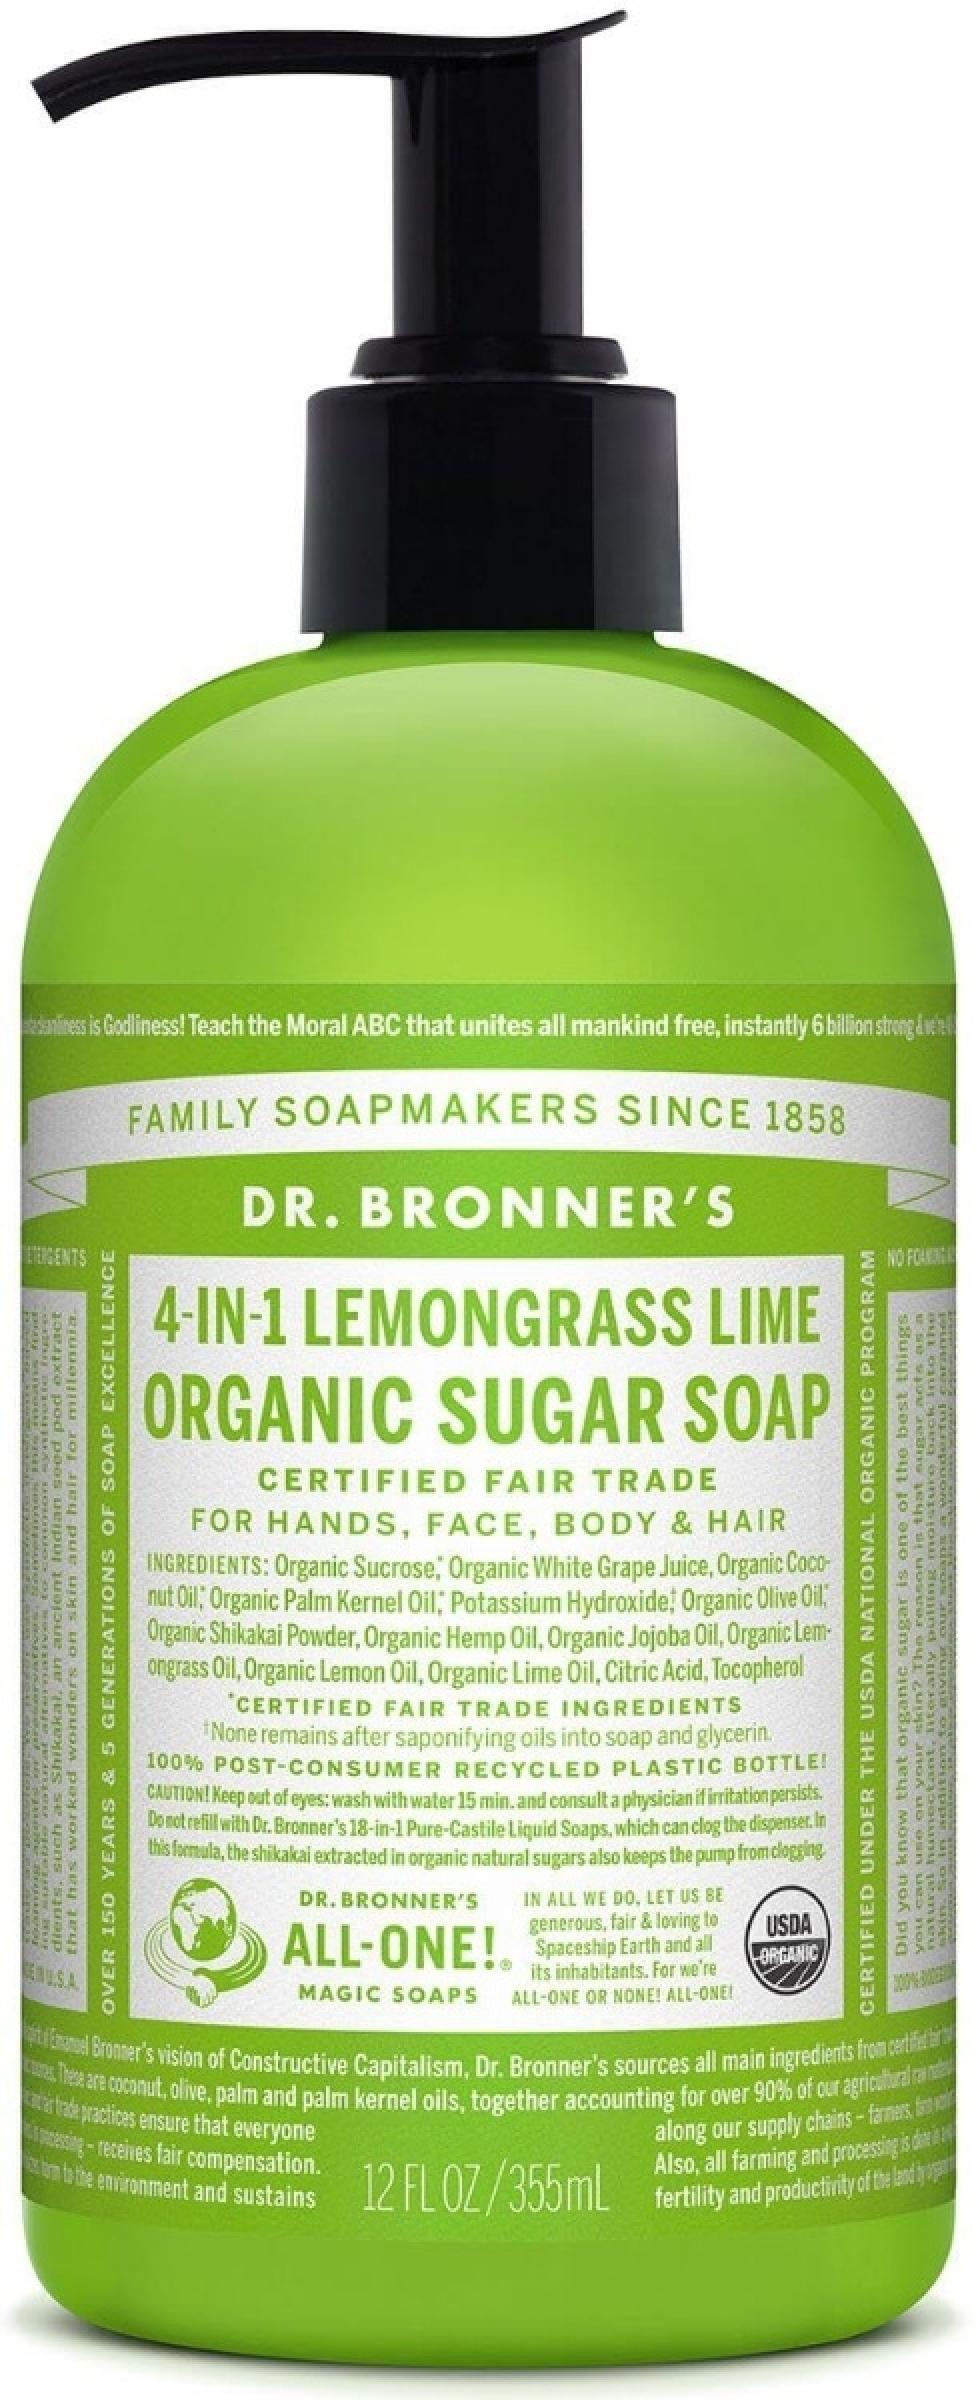 Dr. Bronner's Organic Sugar Soap